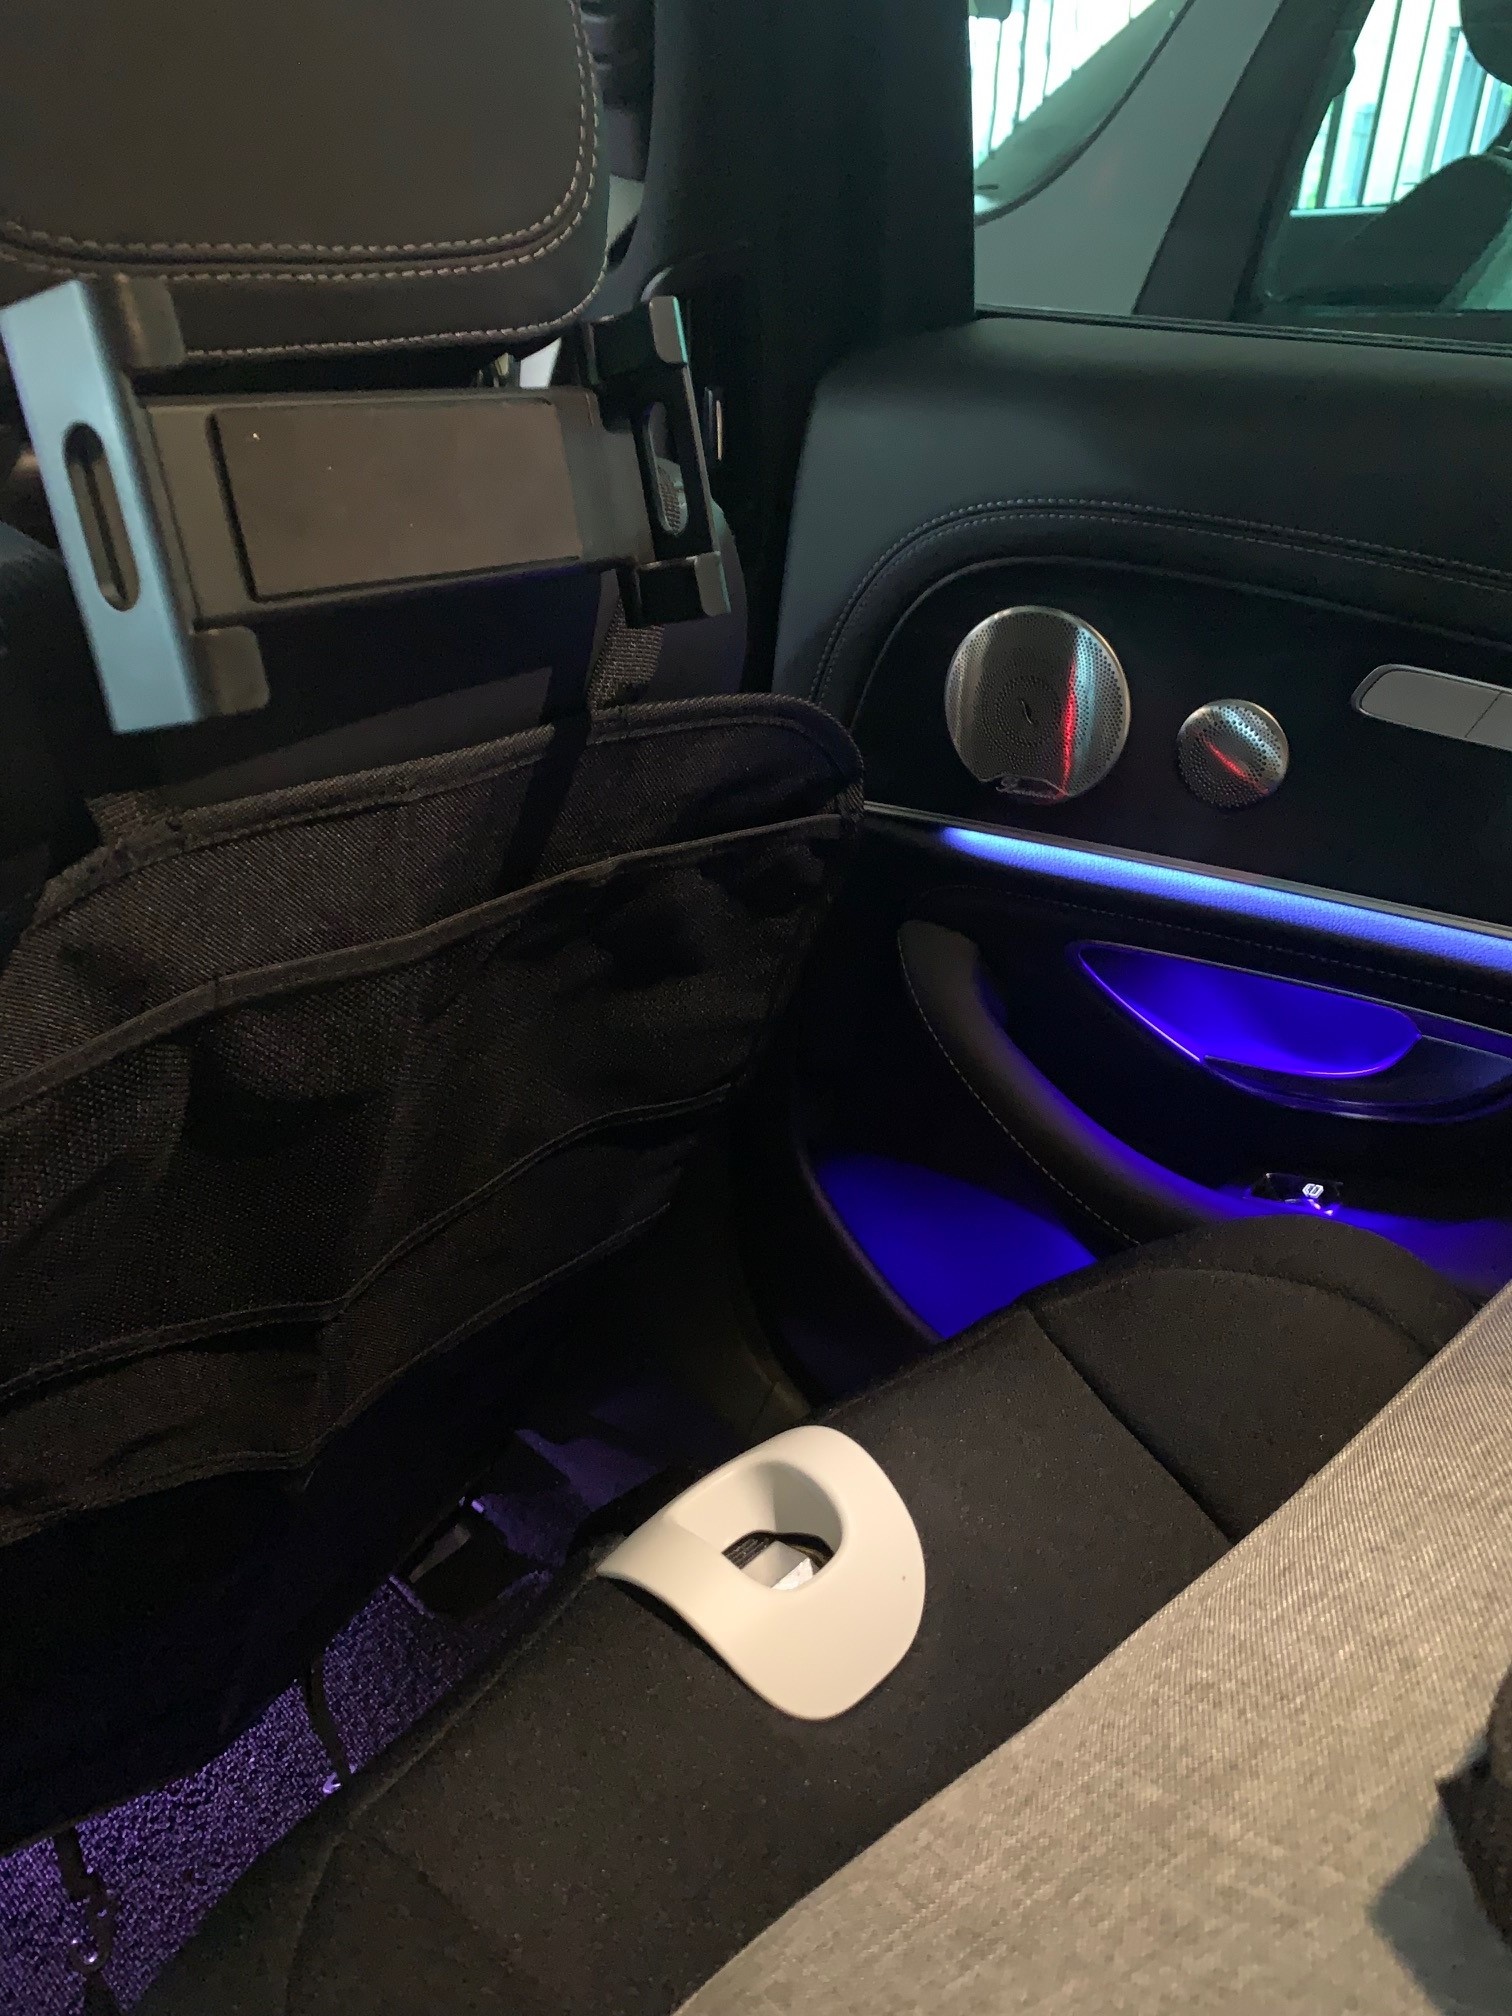 Ipad Halterung für Kopfstütze Tablet Halterung Halter KFZ Mazda